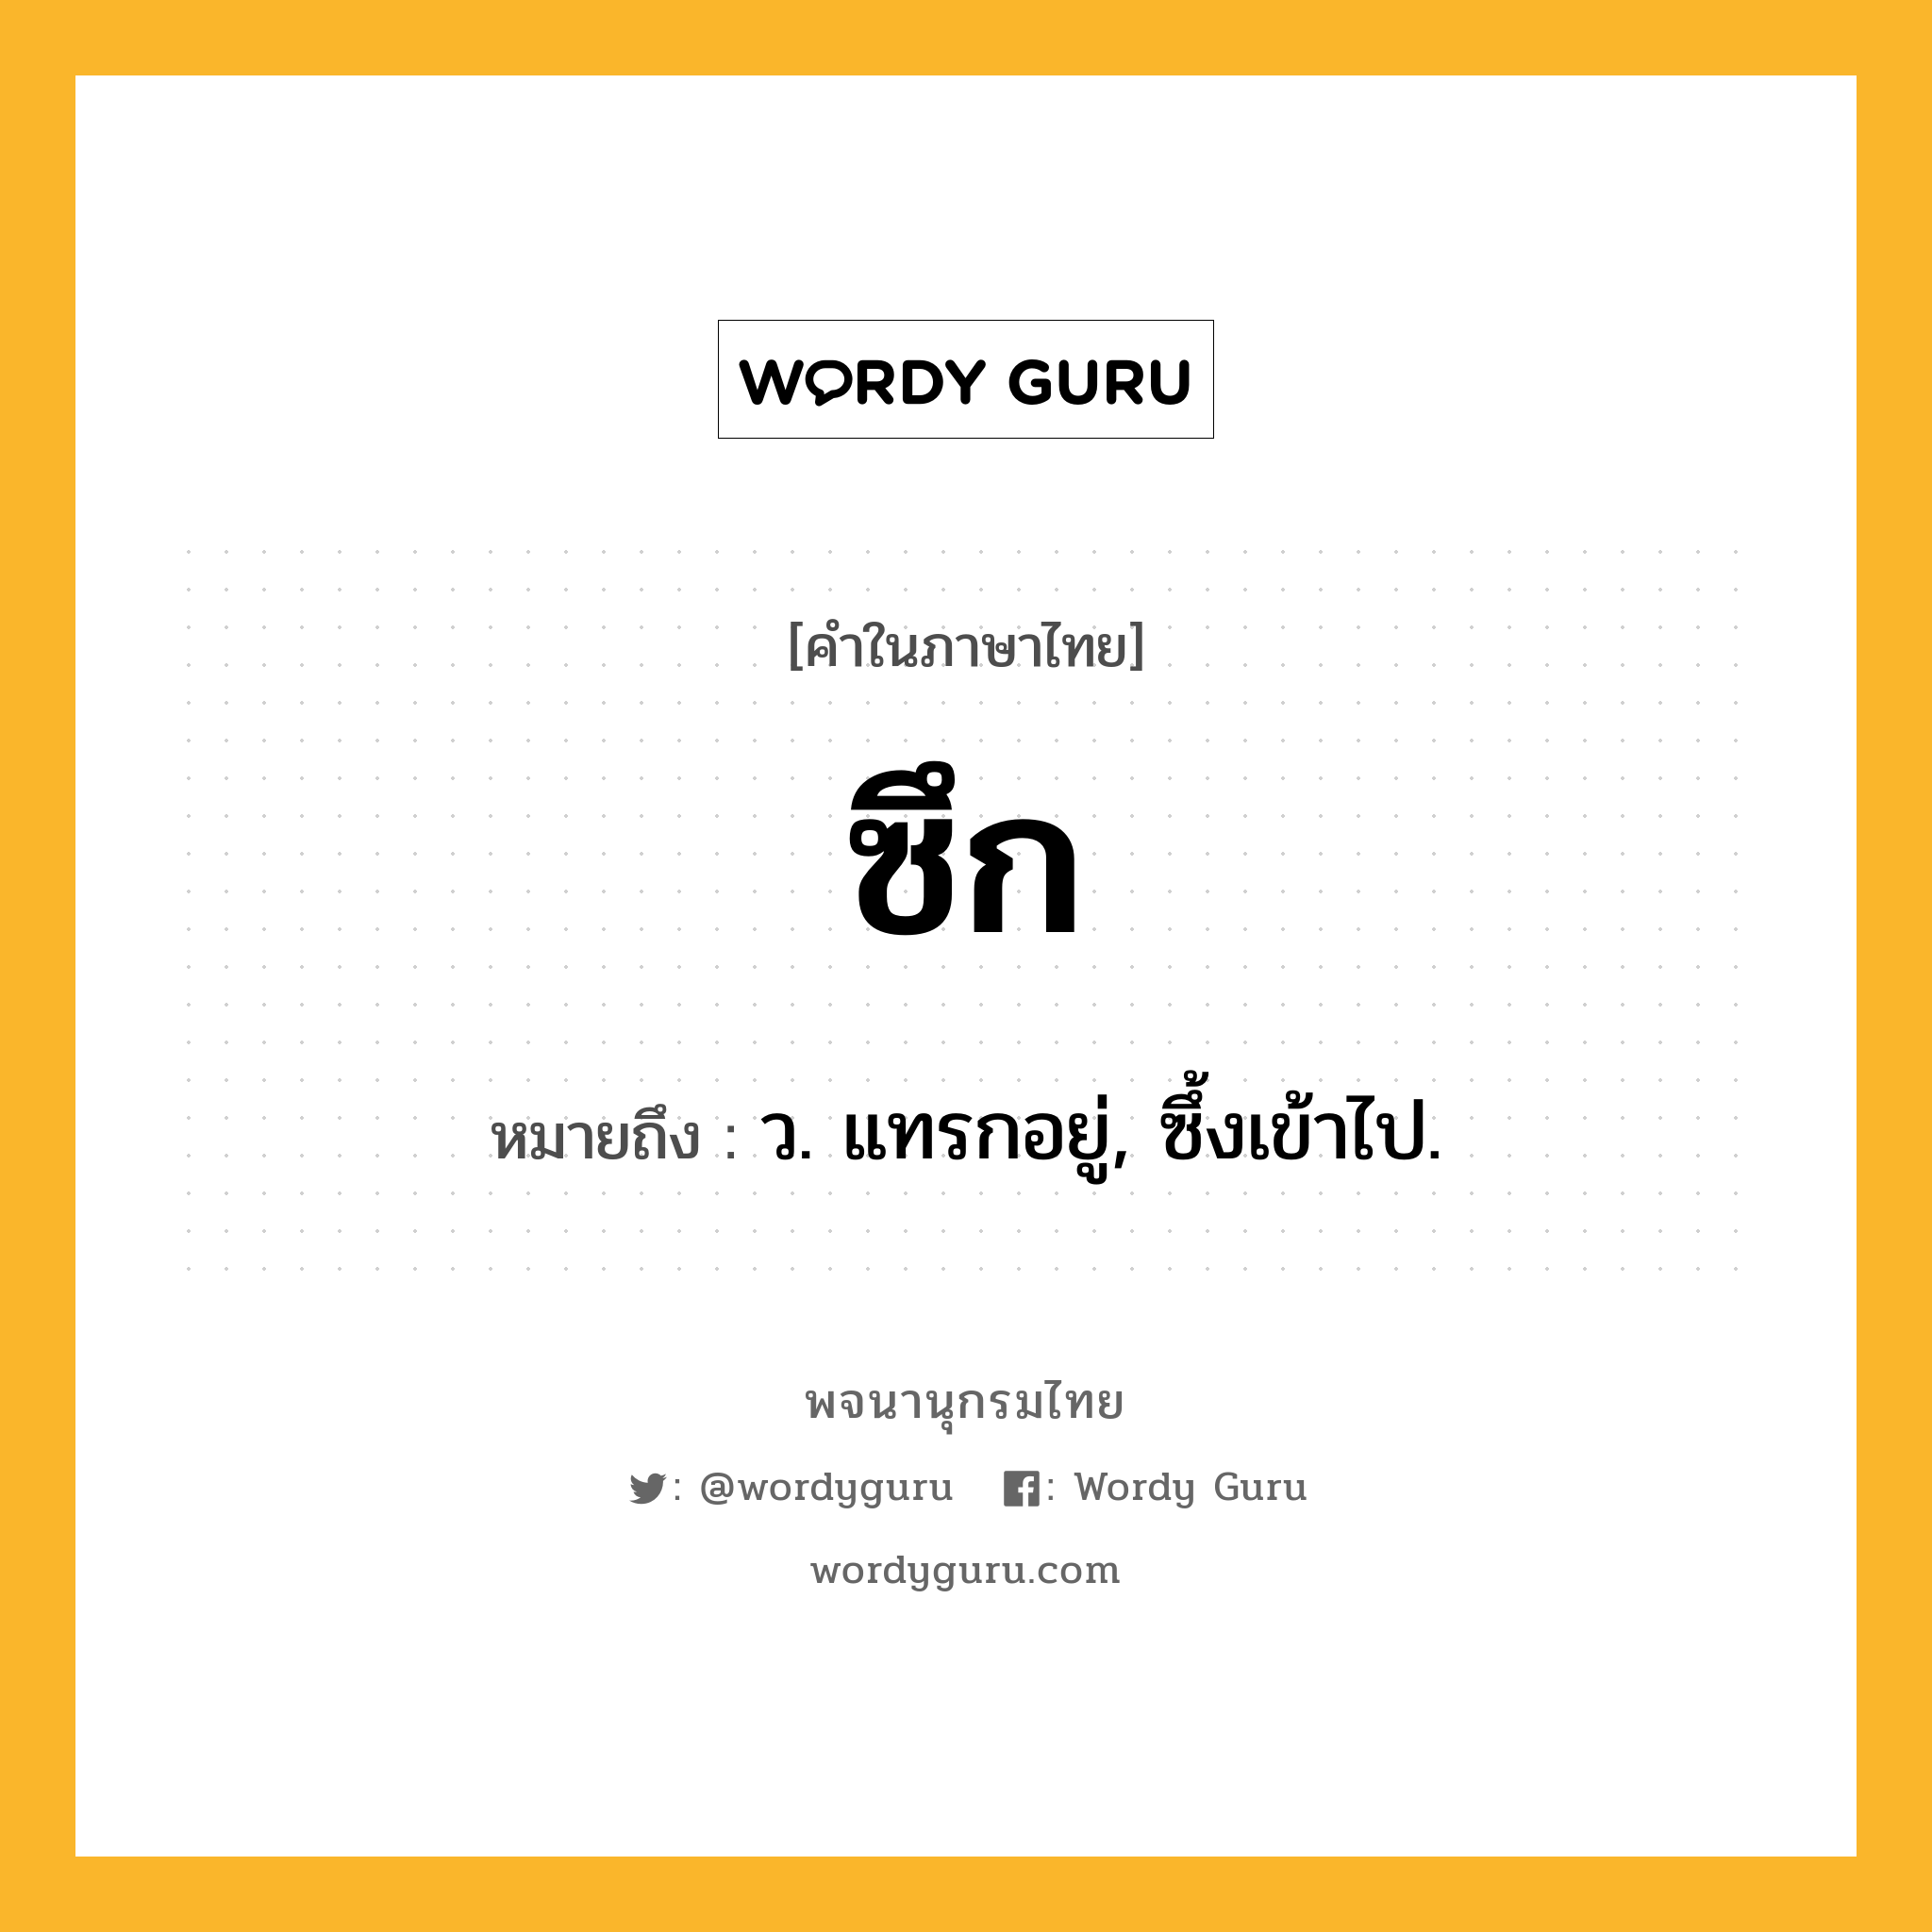 ซึก หมายถึงอะไร?, คำในภาษาไทย ซึก หมายถึง ว. แทรกอยู่, ซึ้งเข้าไป.